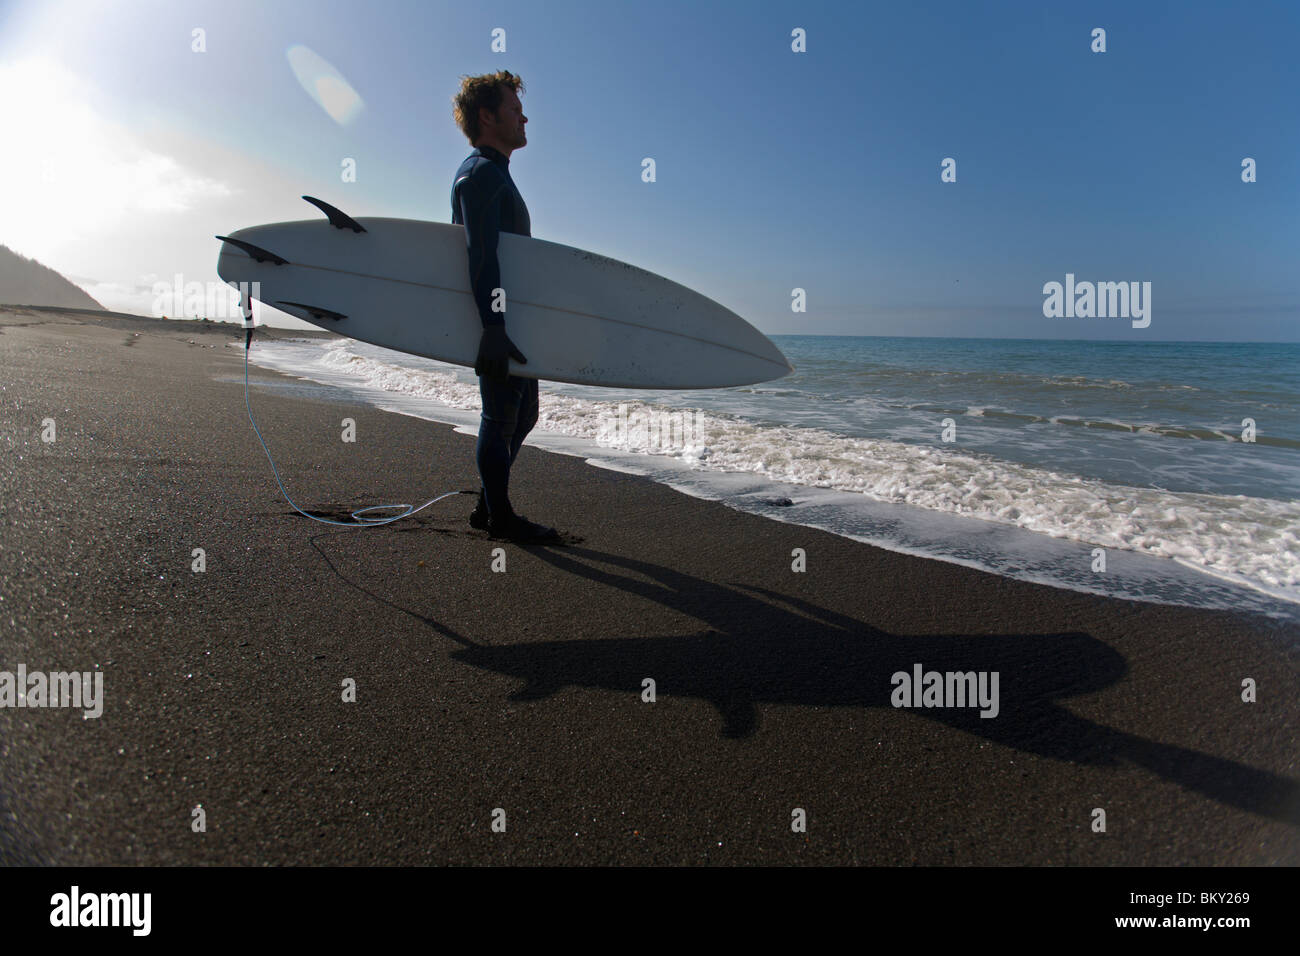 Un homme se tient sur la plage avec une planche de surf sous le bras sur la Lost Coast, Californie. Banque D'Images